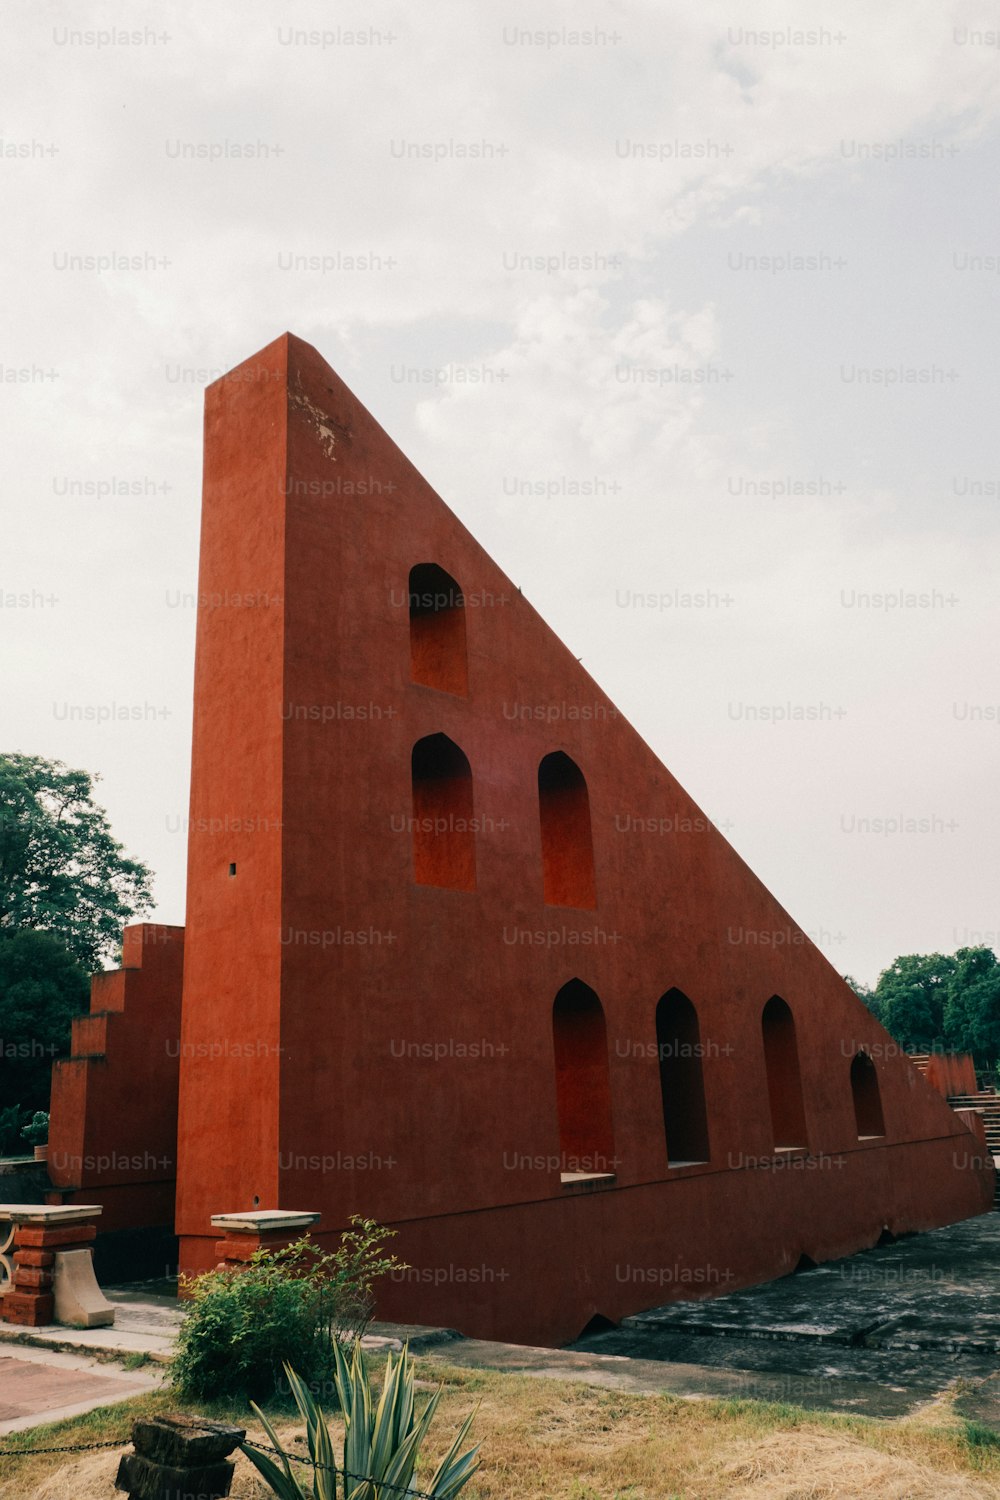 その上に三角形の形をした大きな赤い建物